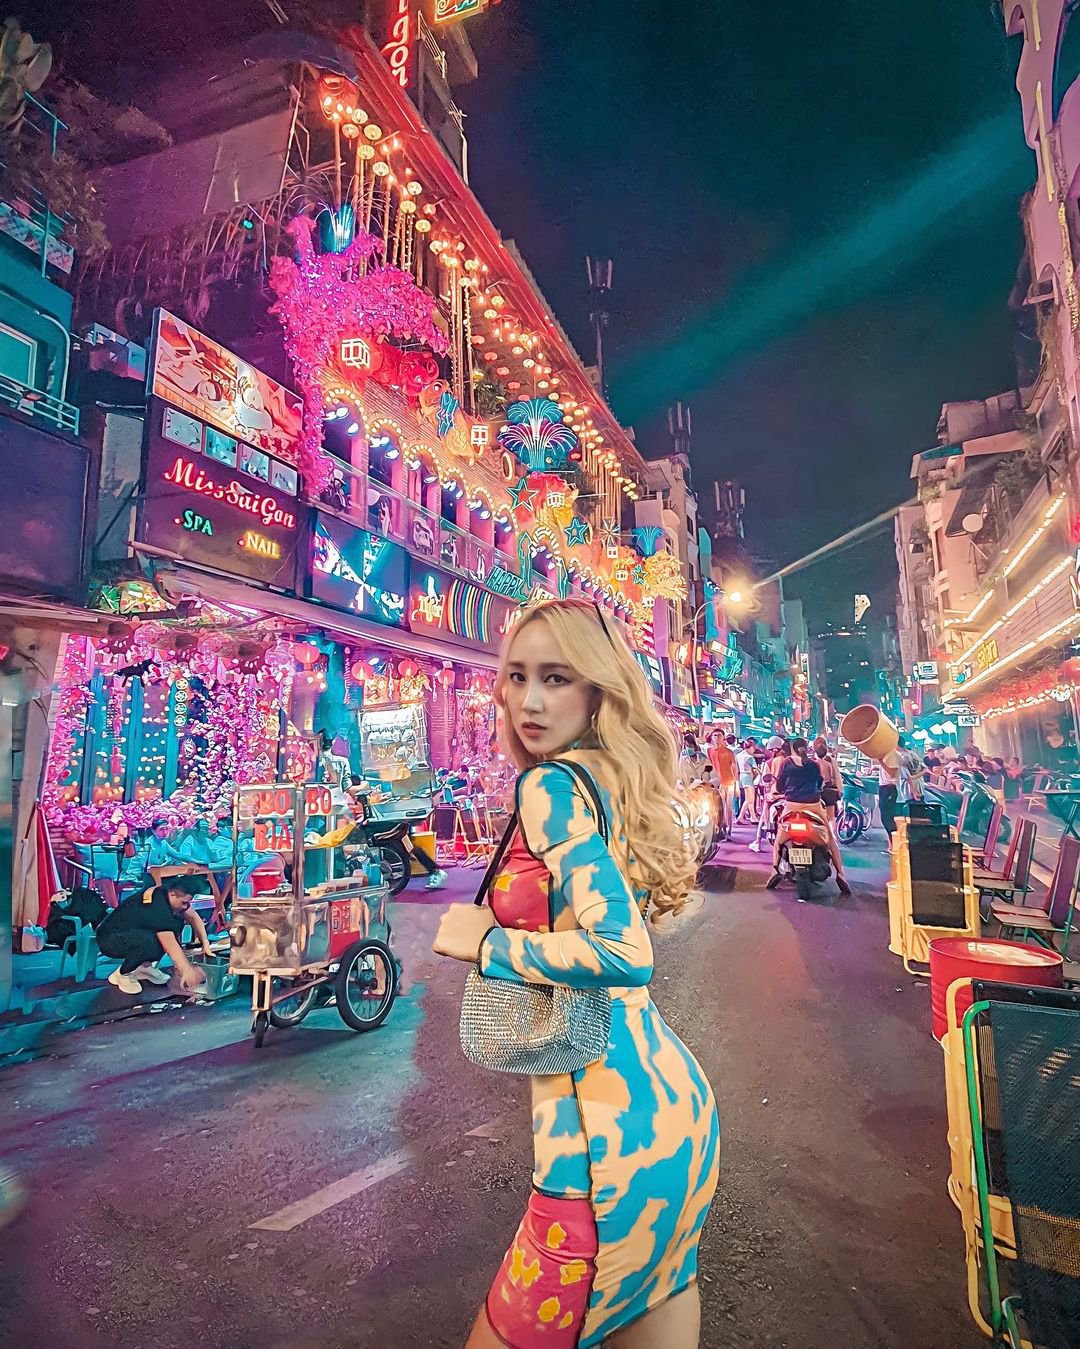 Bật mí 14 tụ điểm vui chơi hấp dẫn ở Sài Gòn vào buổi tối | Justfly.vn